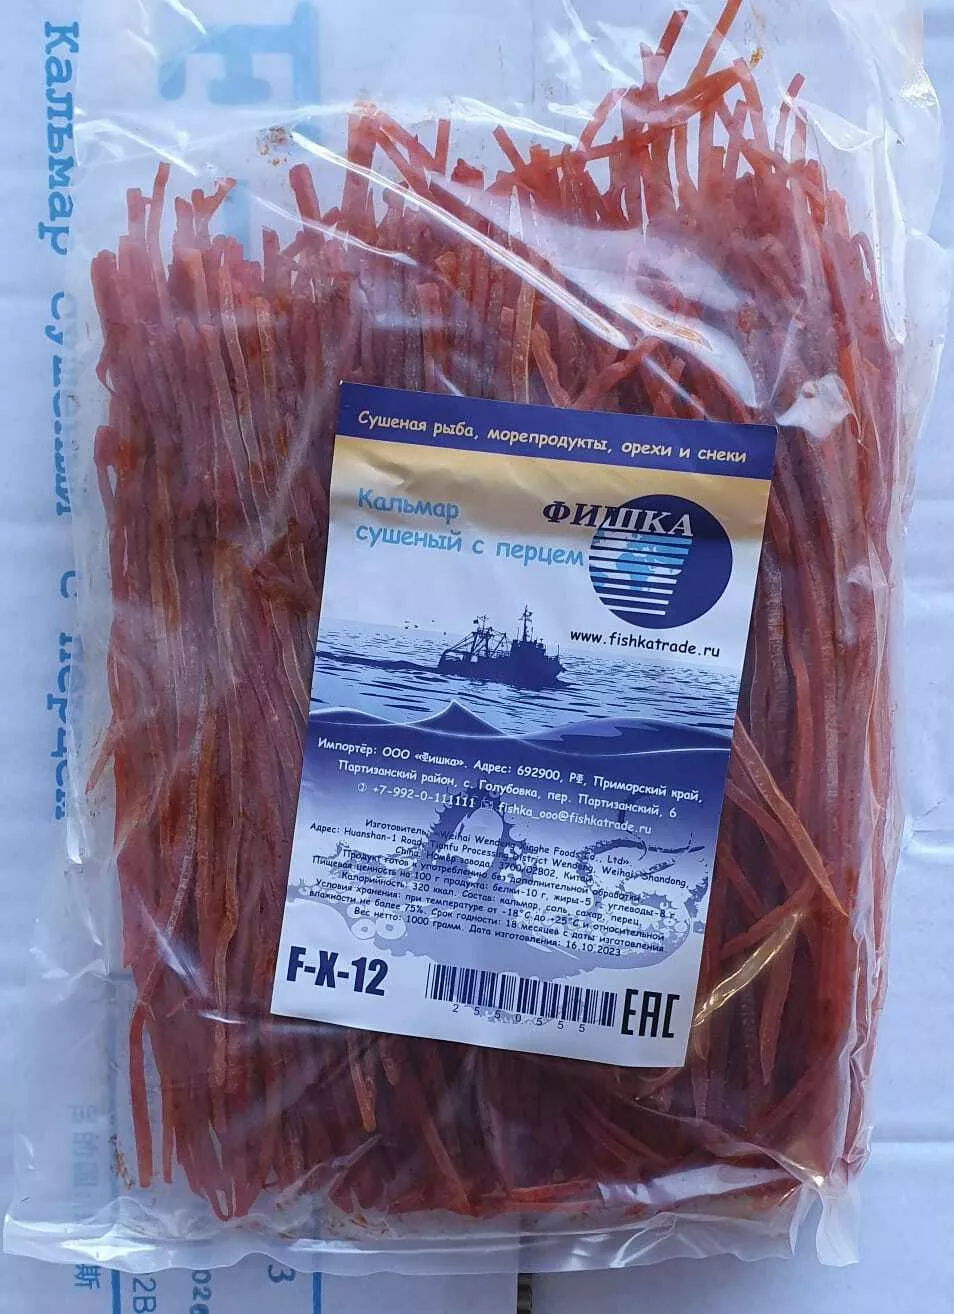 кальмар со вкусом краба (мясо-стружка)  в Владивостоке 2